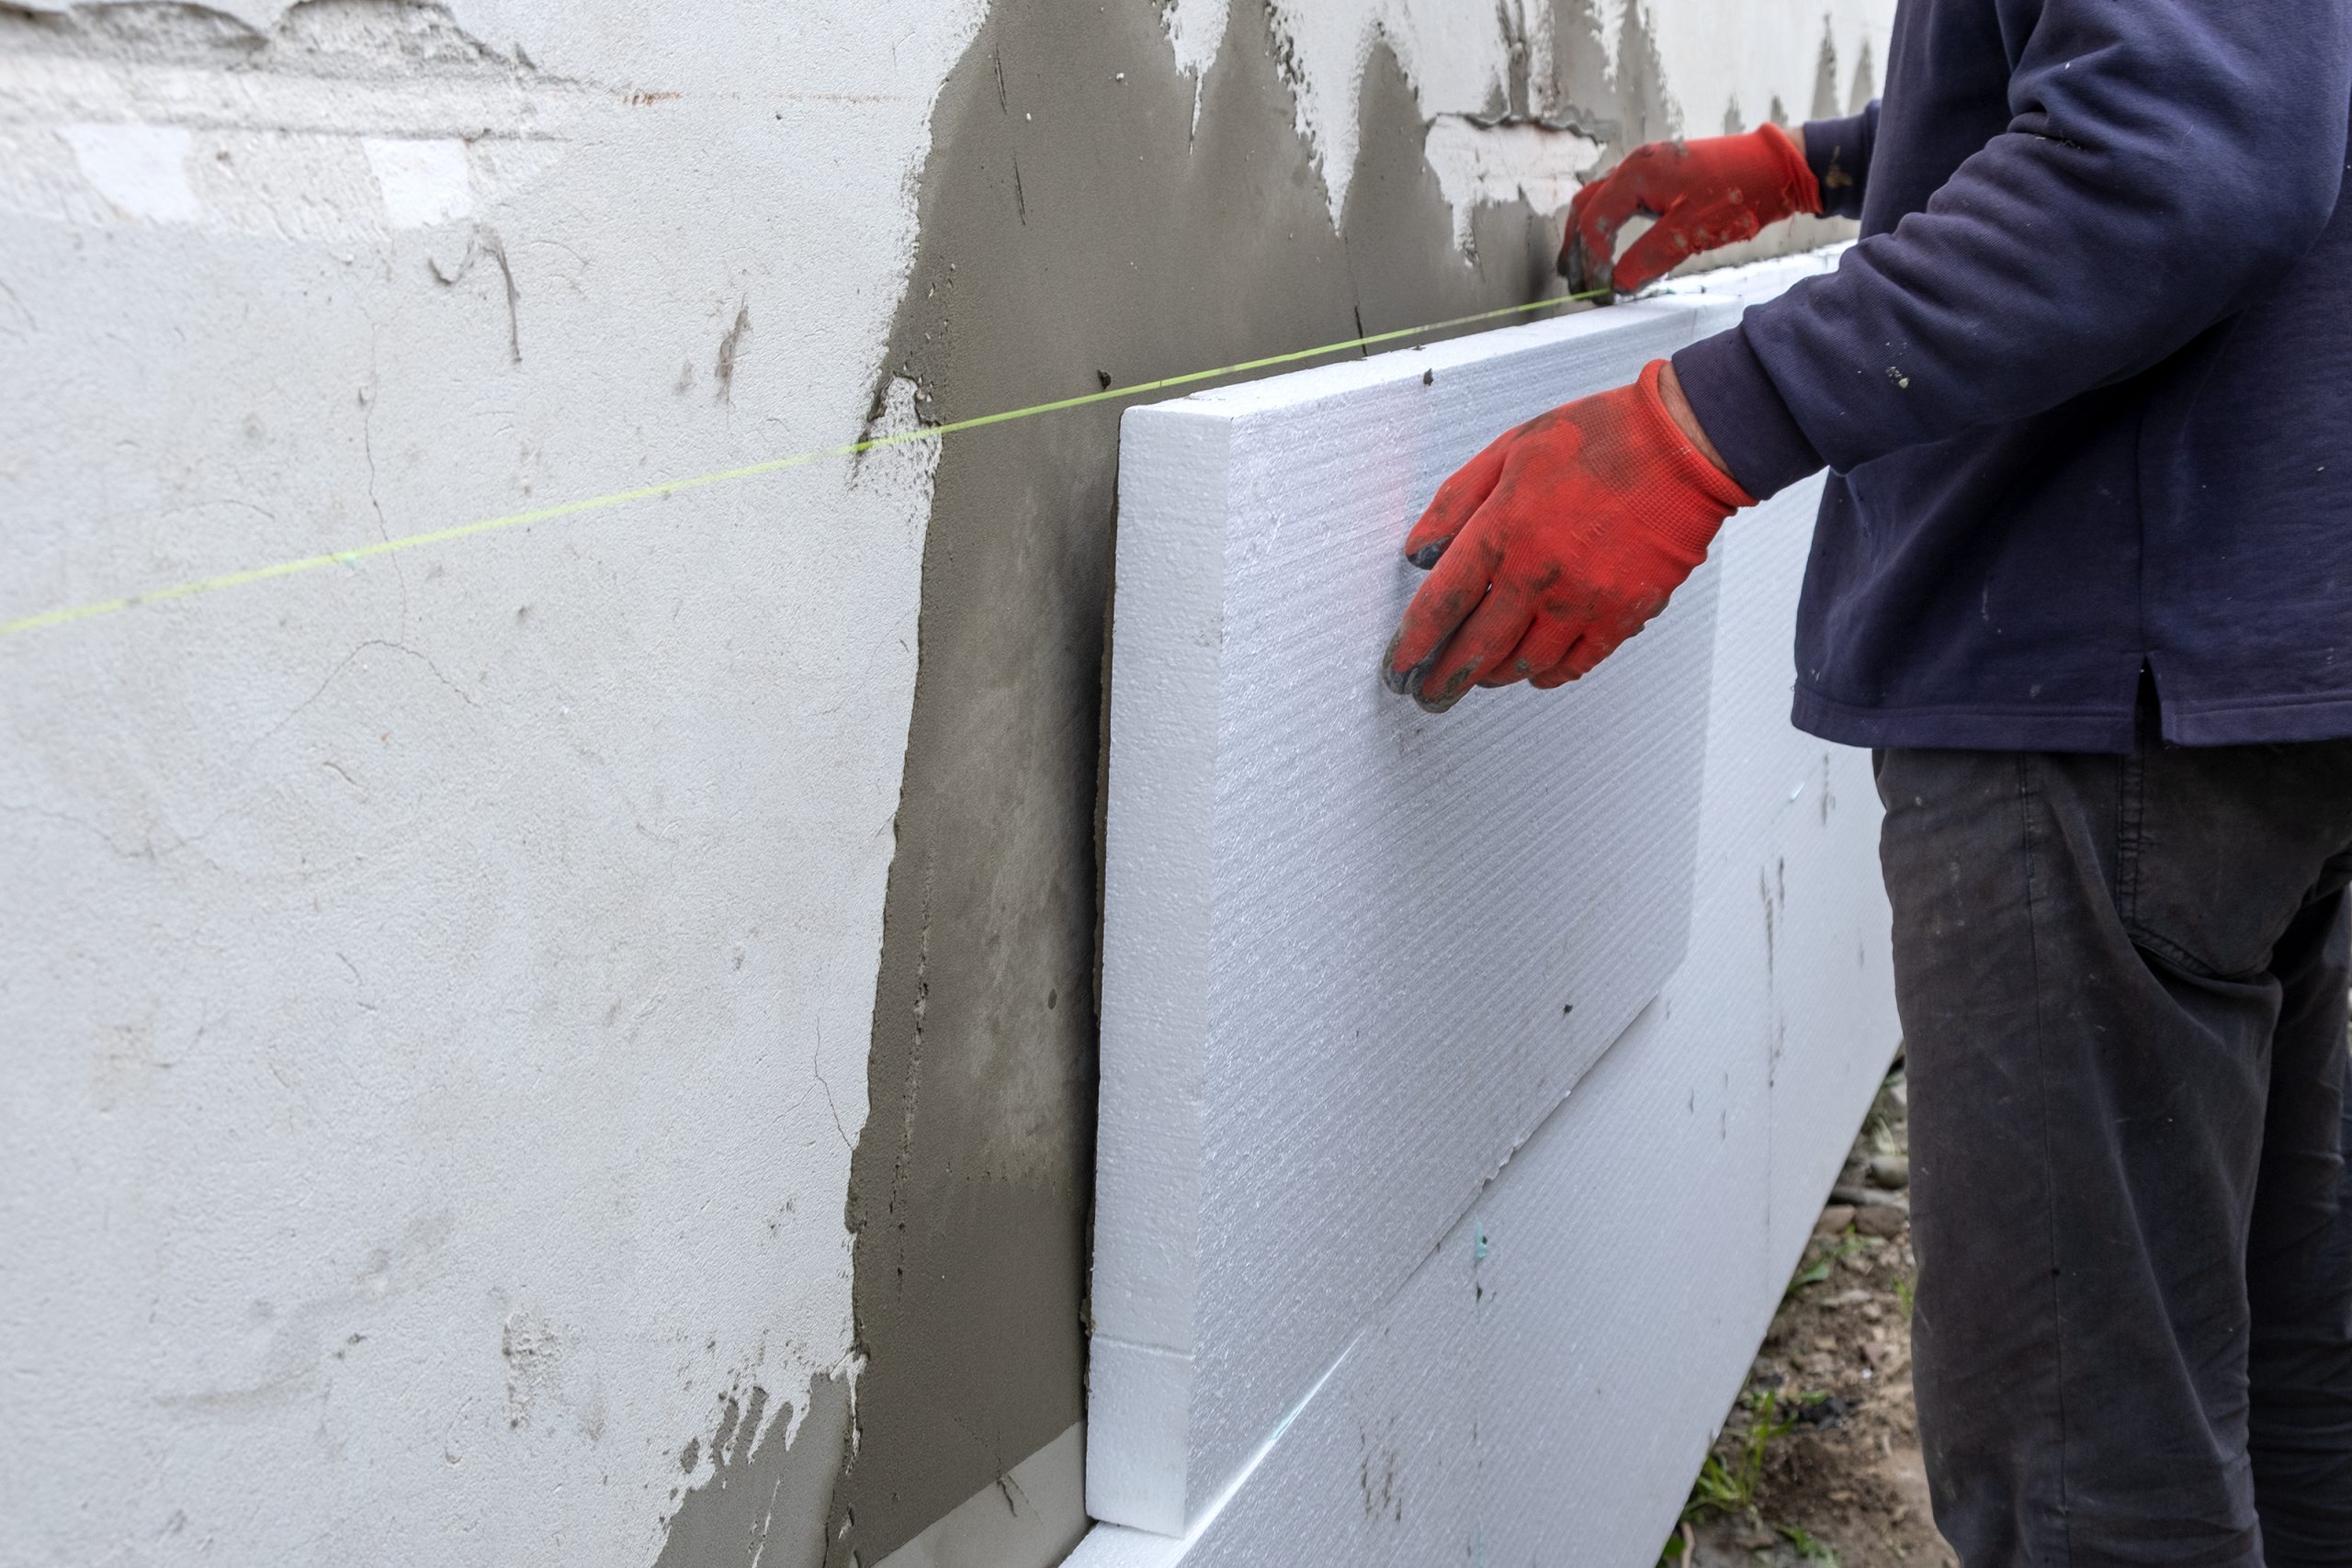 Stavebný špecialista prikladajúci polystyrénovú izoláciu na stenu montovaného drevodomu